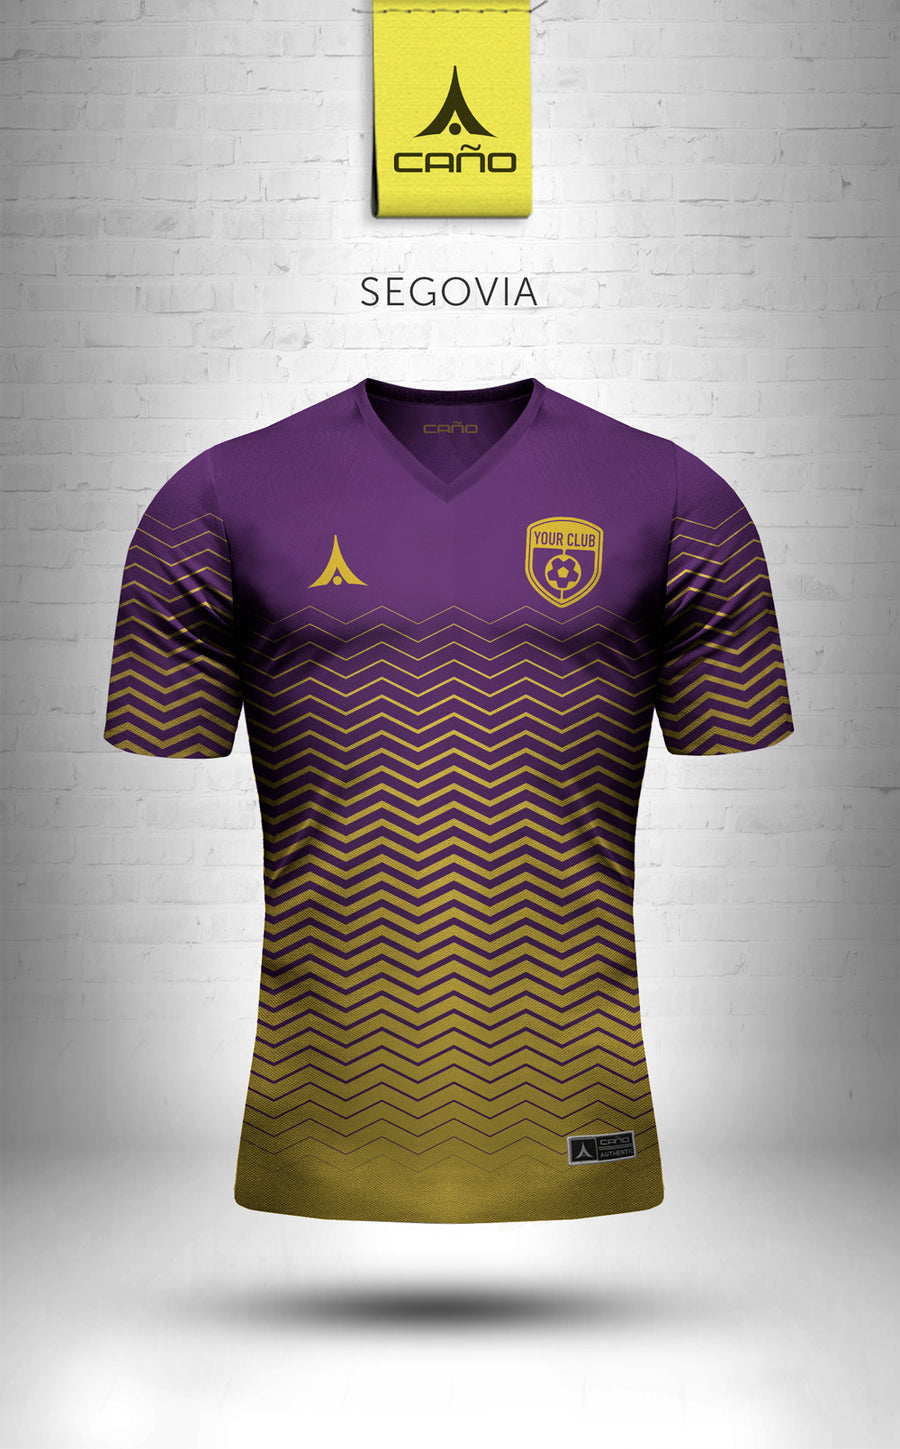 Segovia in purple/gold